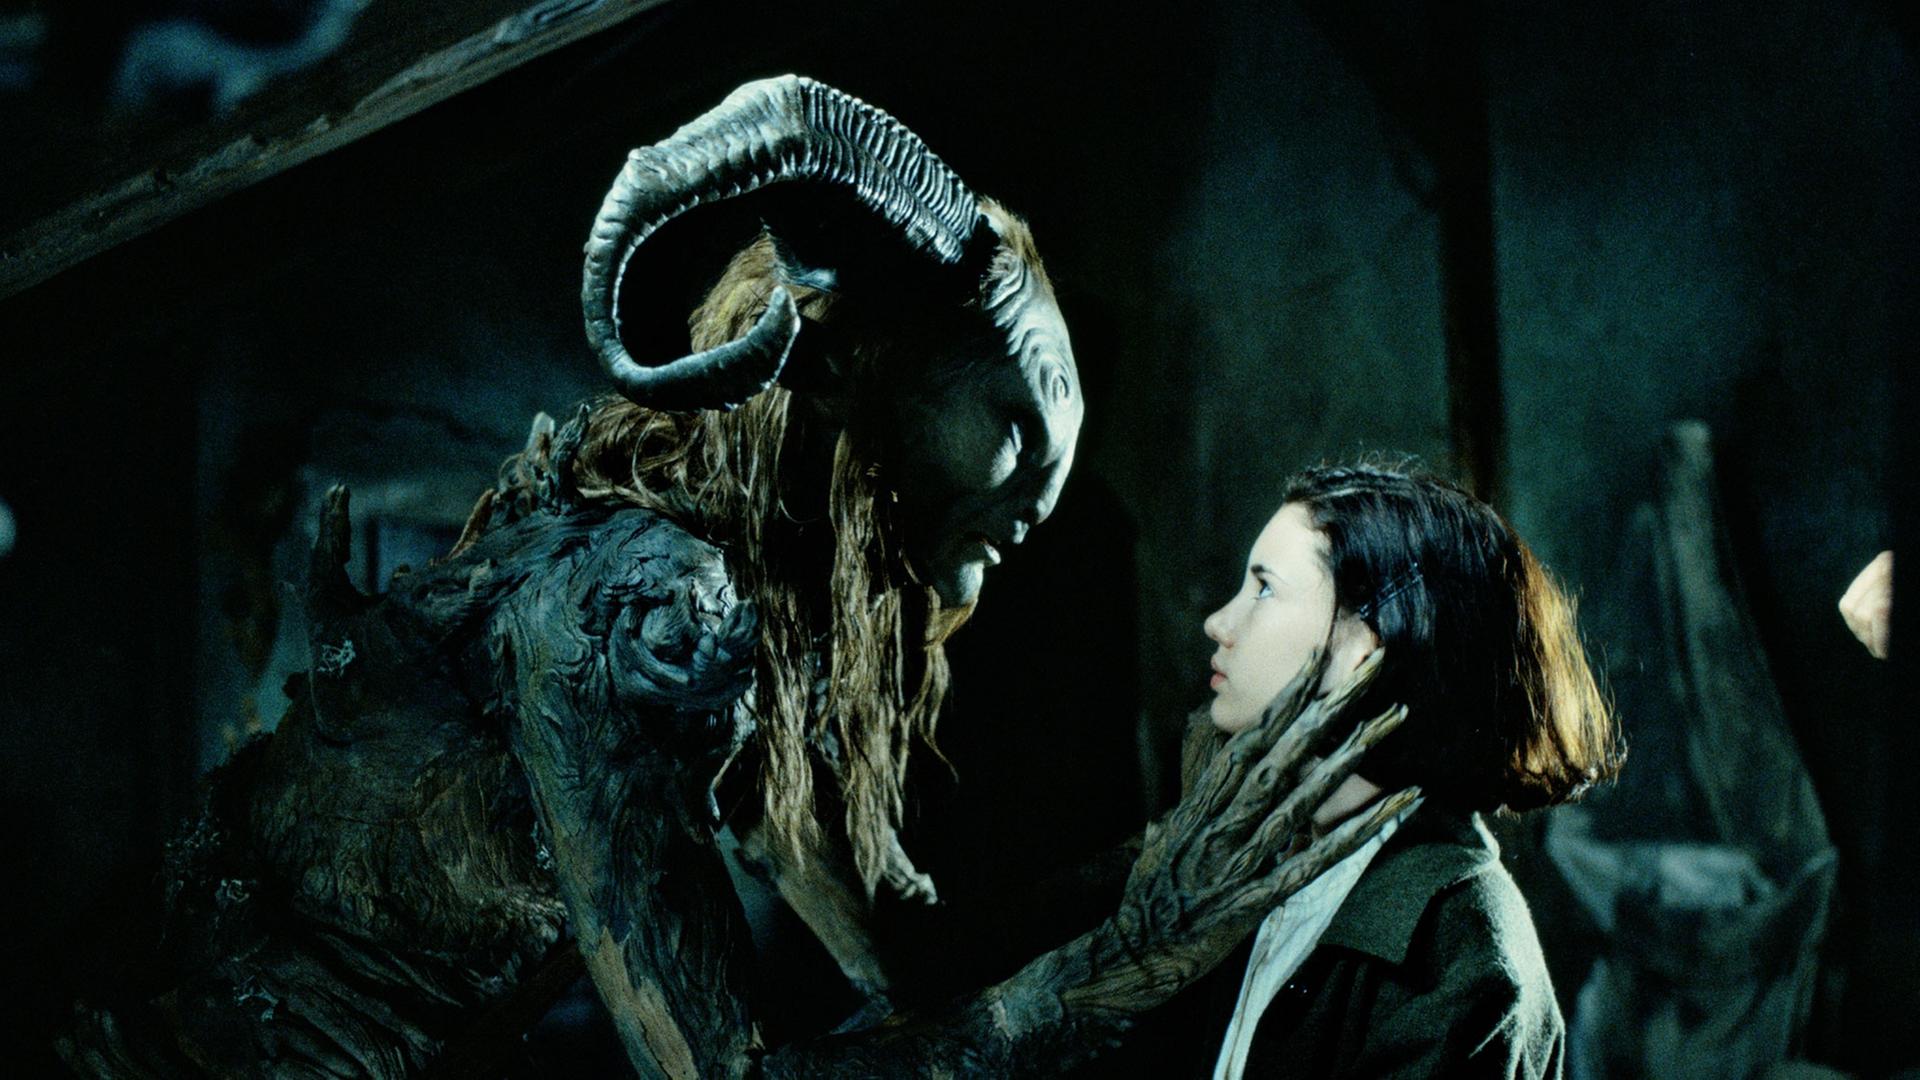 Szene aus dem Film "Pans Labyrinth": Der Pan, gespielt von Doug Jones, packt der kleinen Ofelia, gespielt von Ivana Baquero, an den Hals.